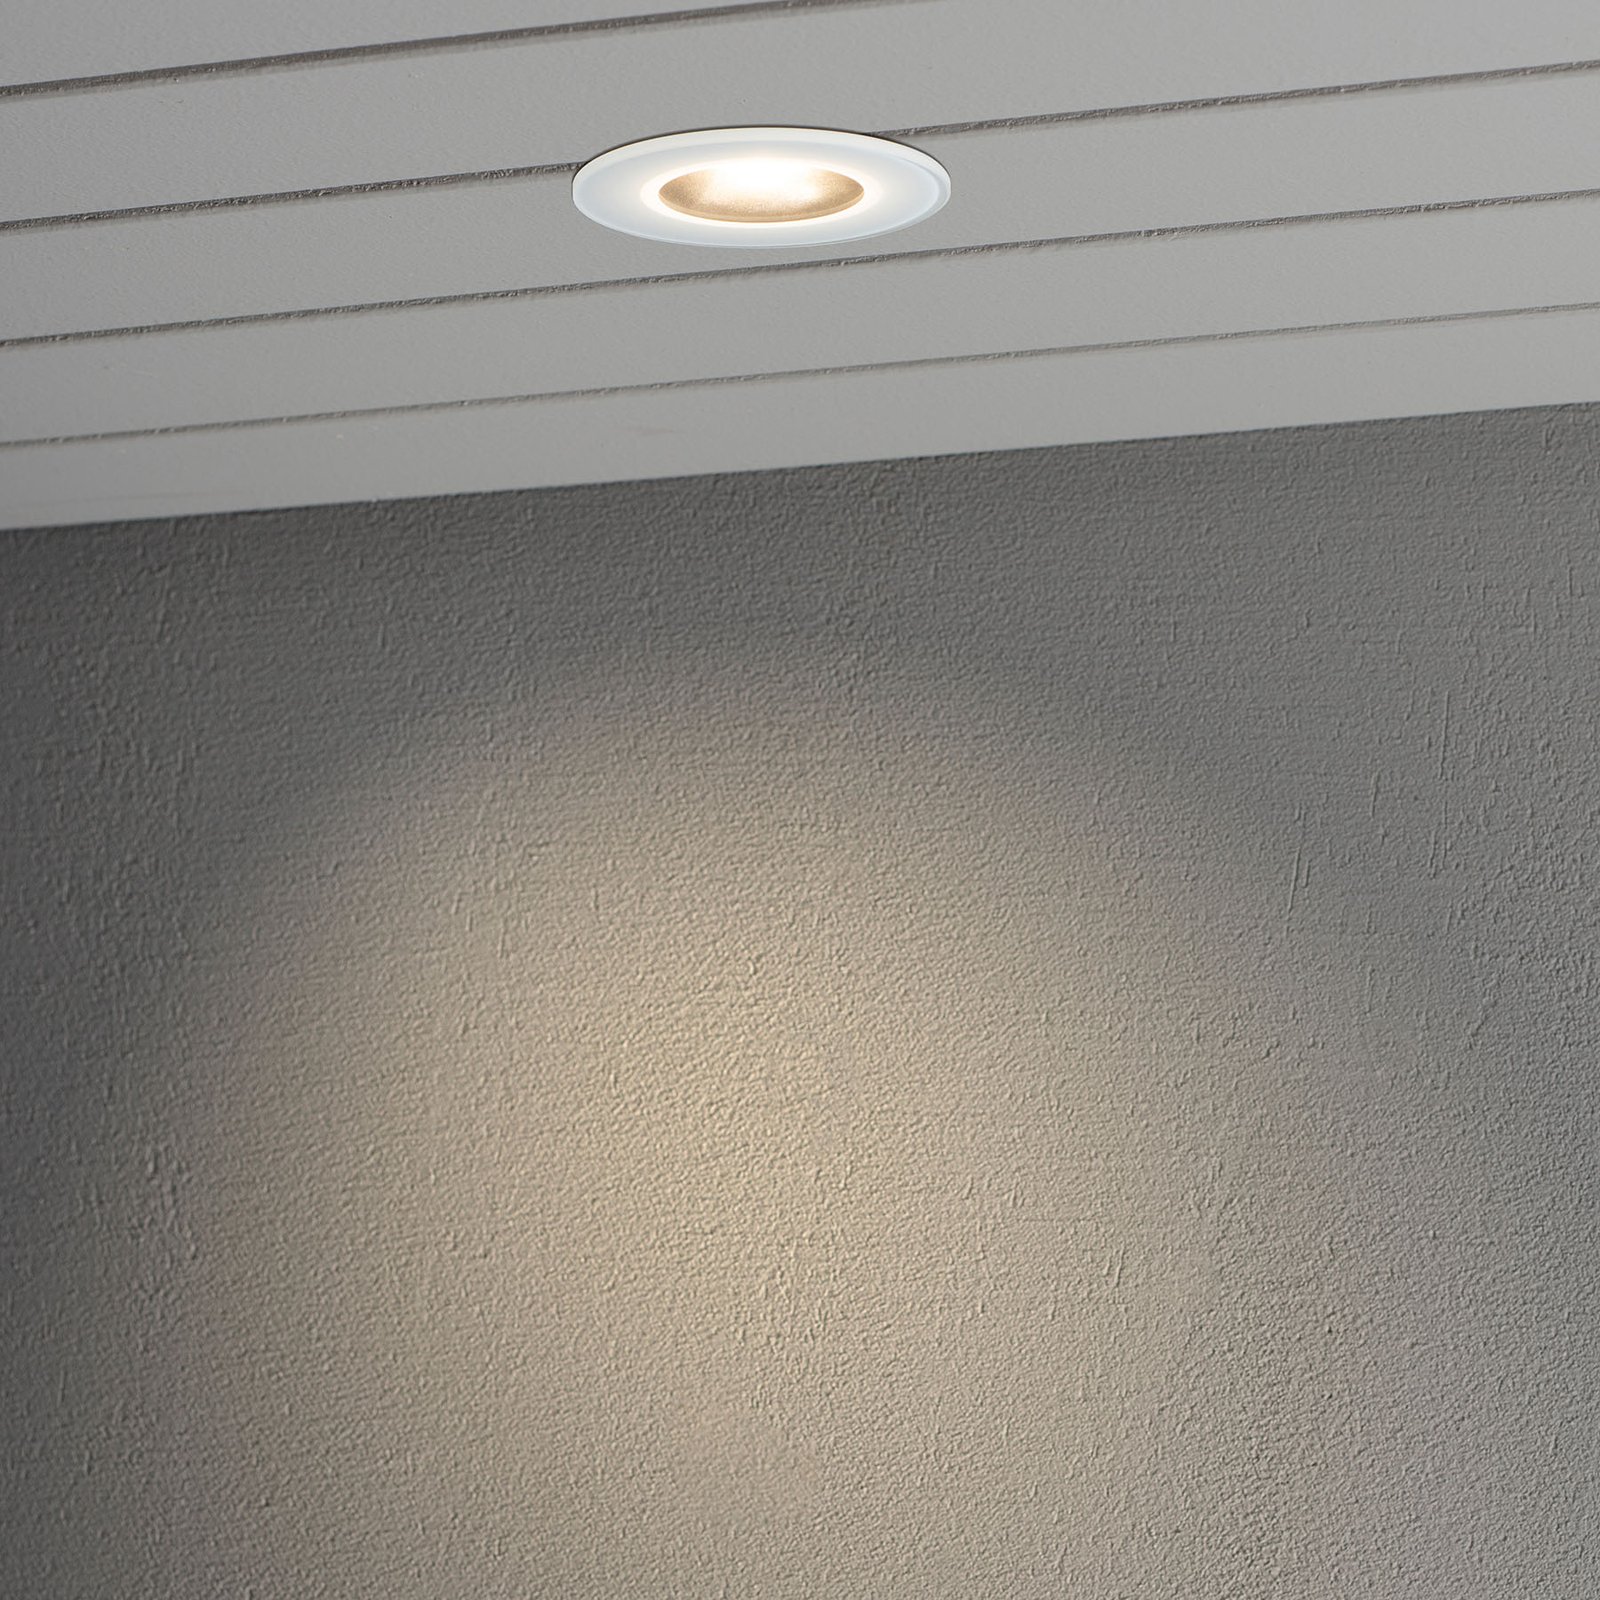 LED-Einbauleuchte 7875 Decke Außenbereich, weiß